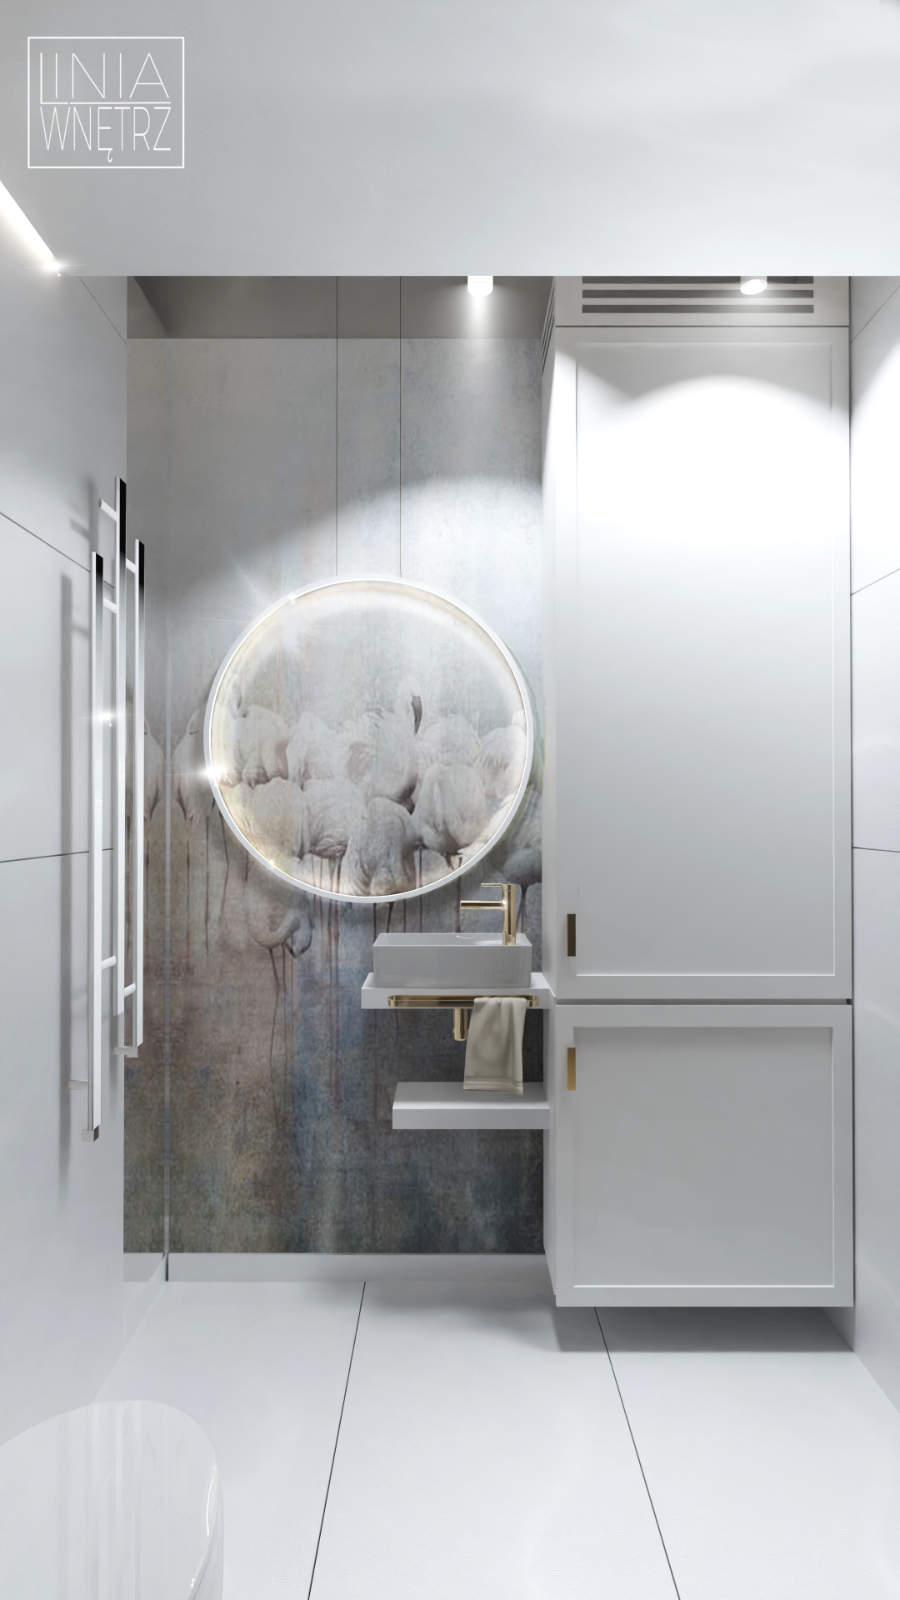 tapeta wonderwoll w łazience ramko kinkiet piękna łazienka projektowanie wnętrz śląsk